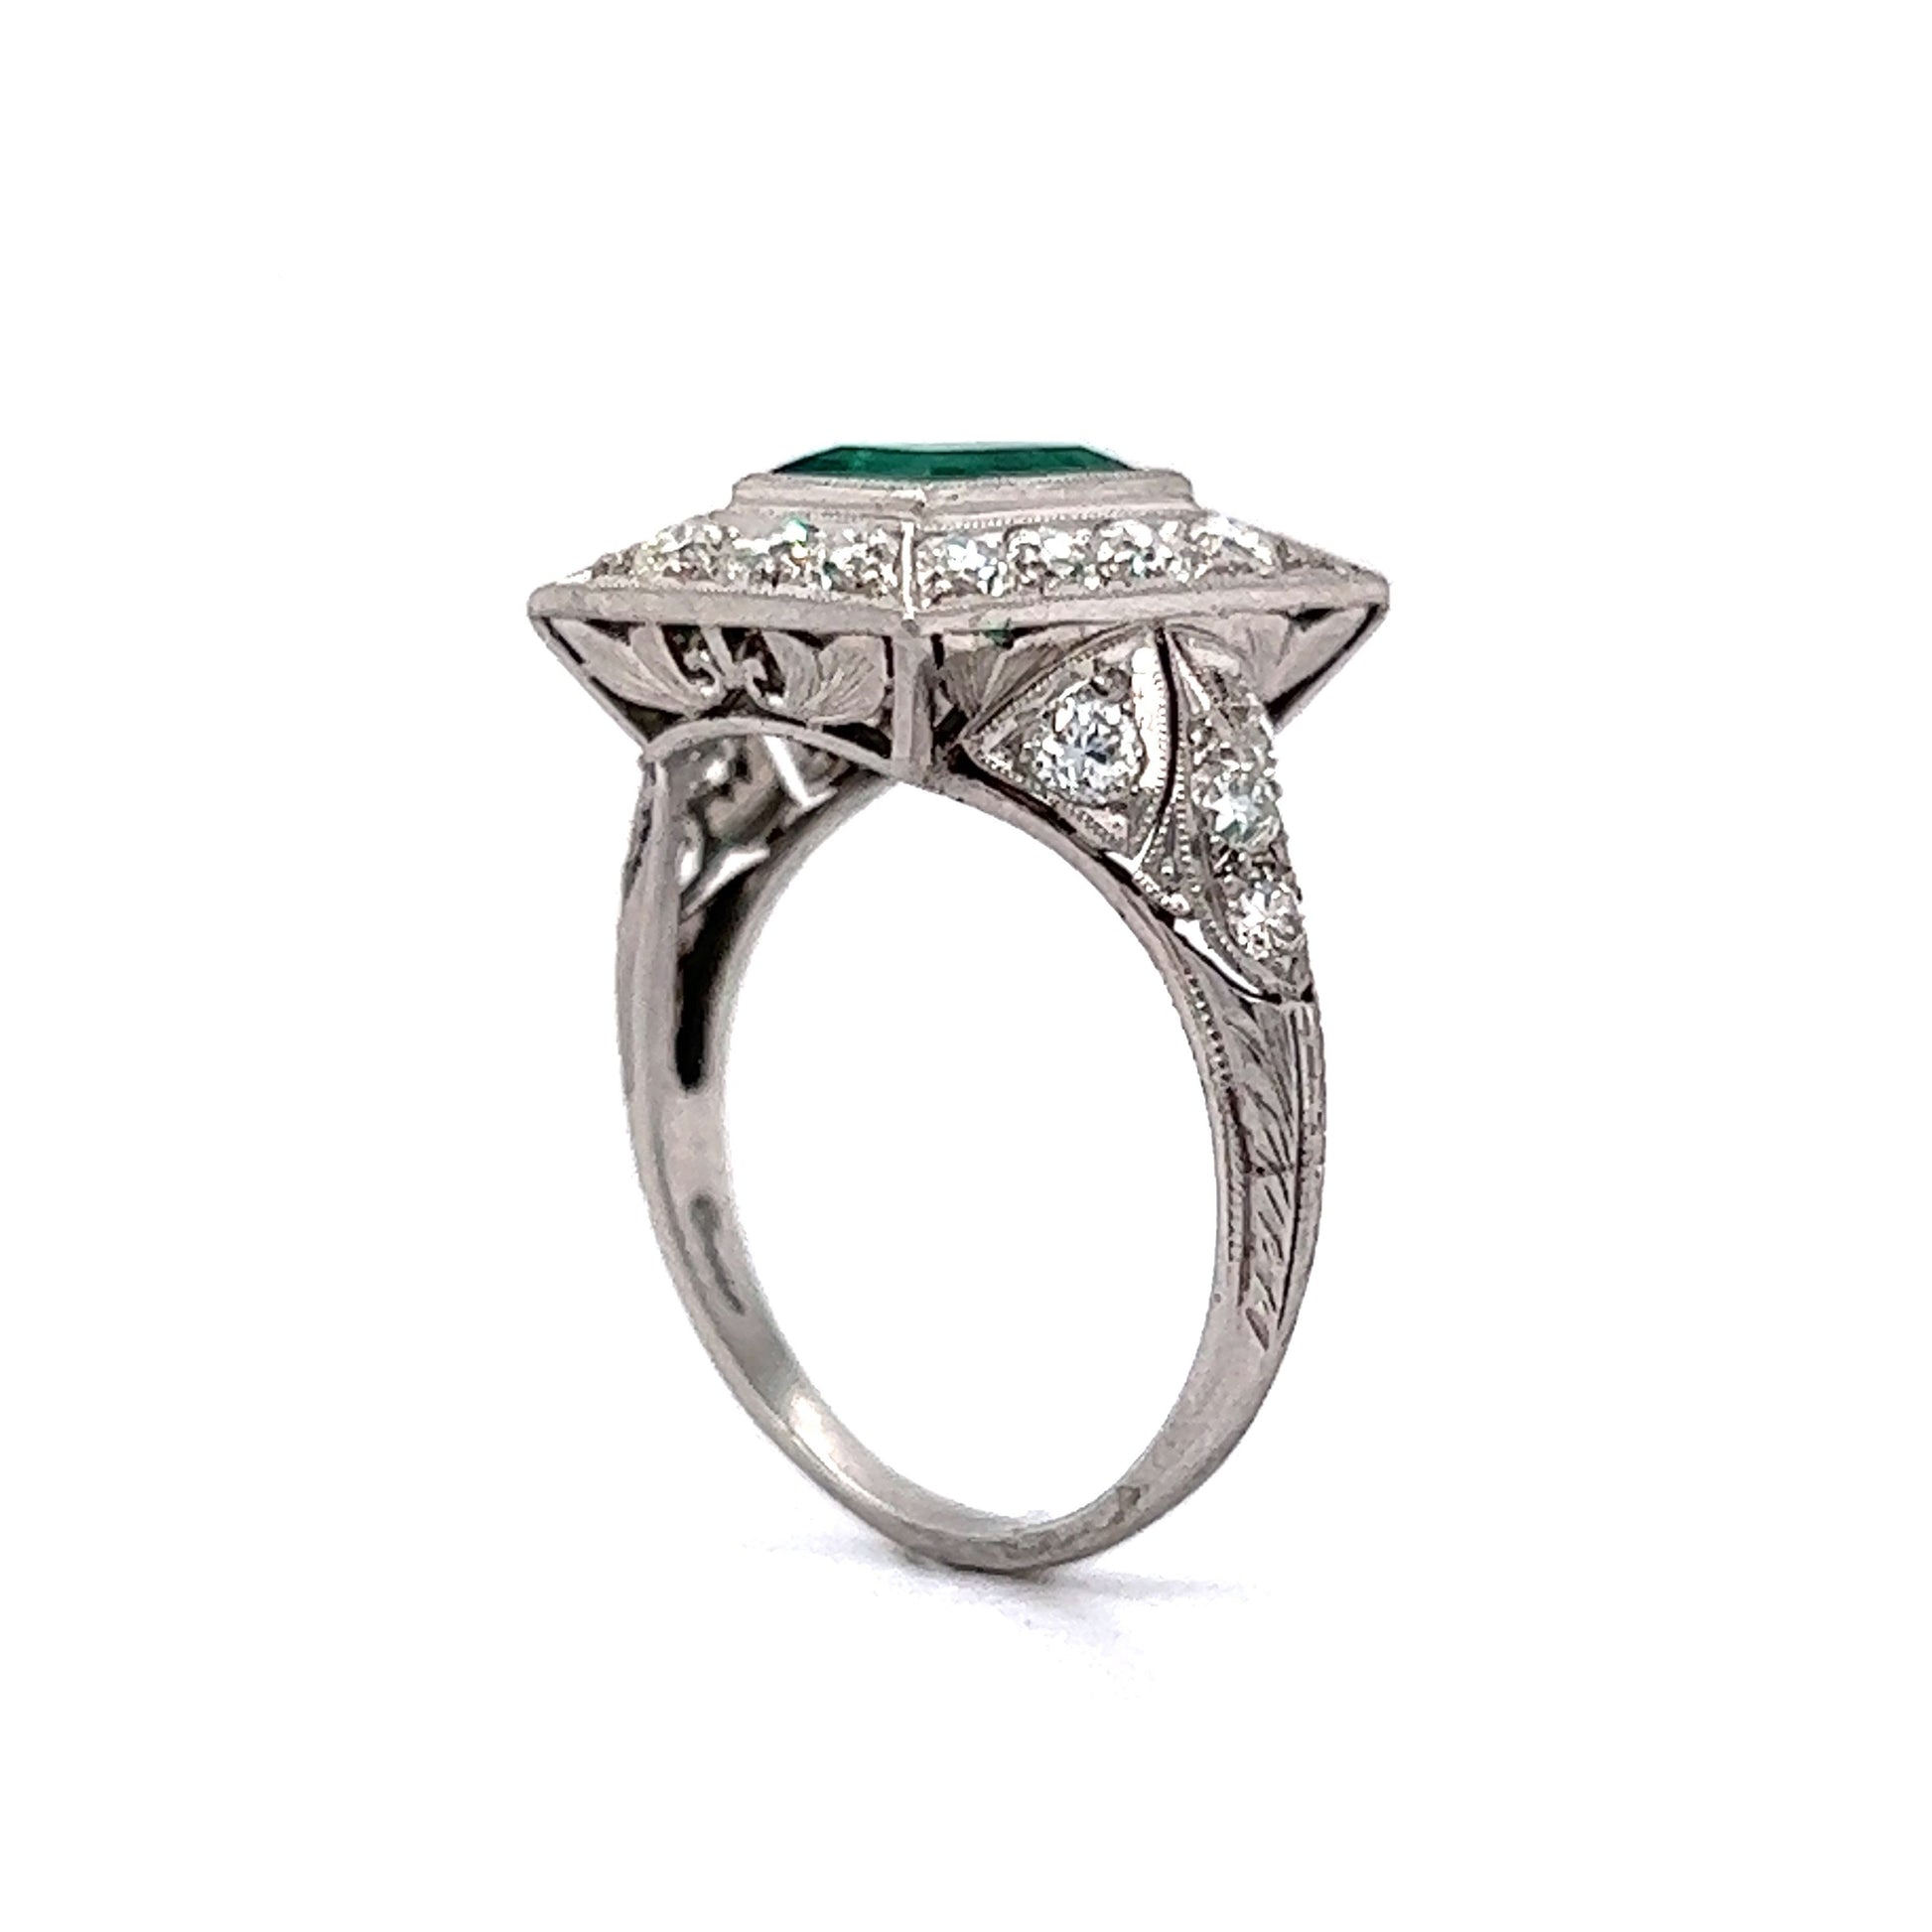 1.07 Art Deco Emerald & Diamond Cocktail Ring in Platinum